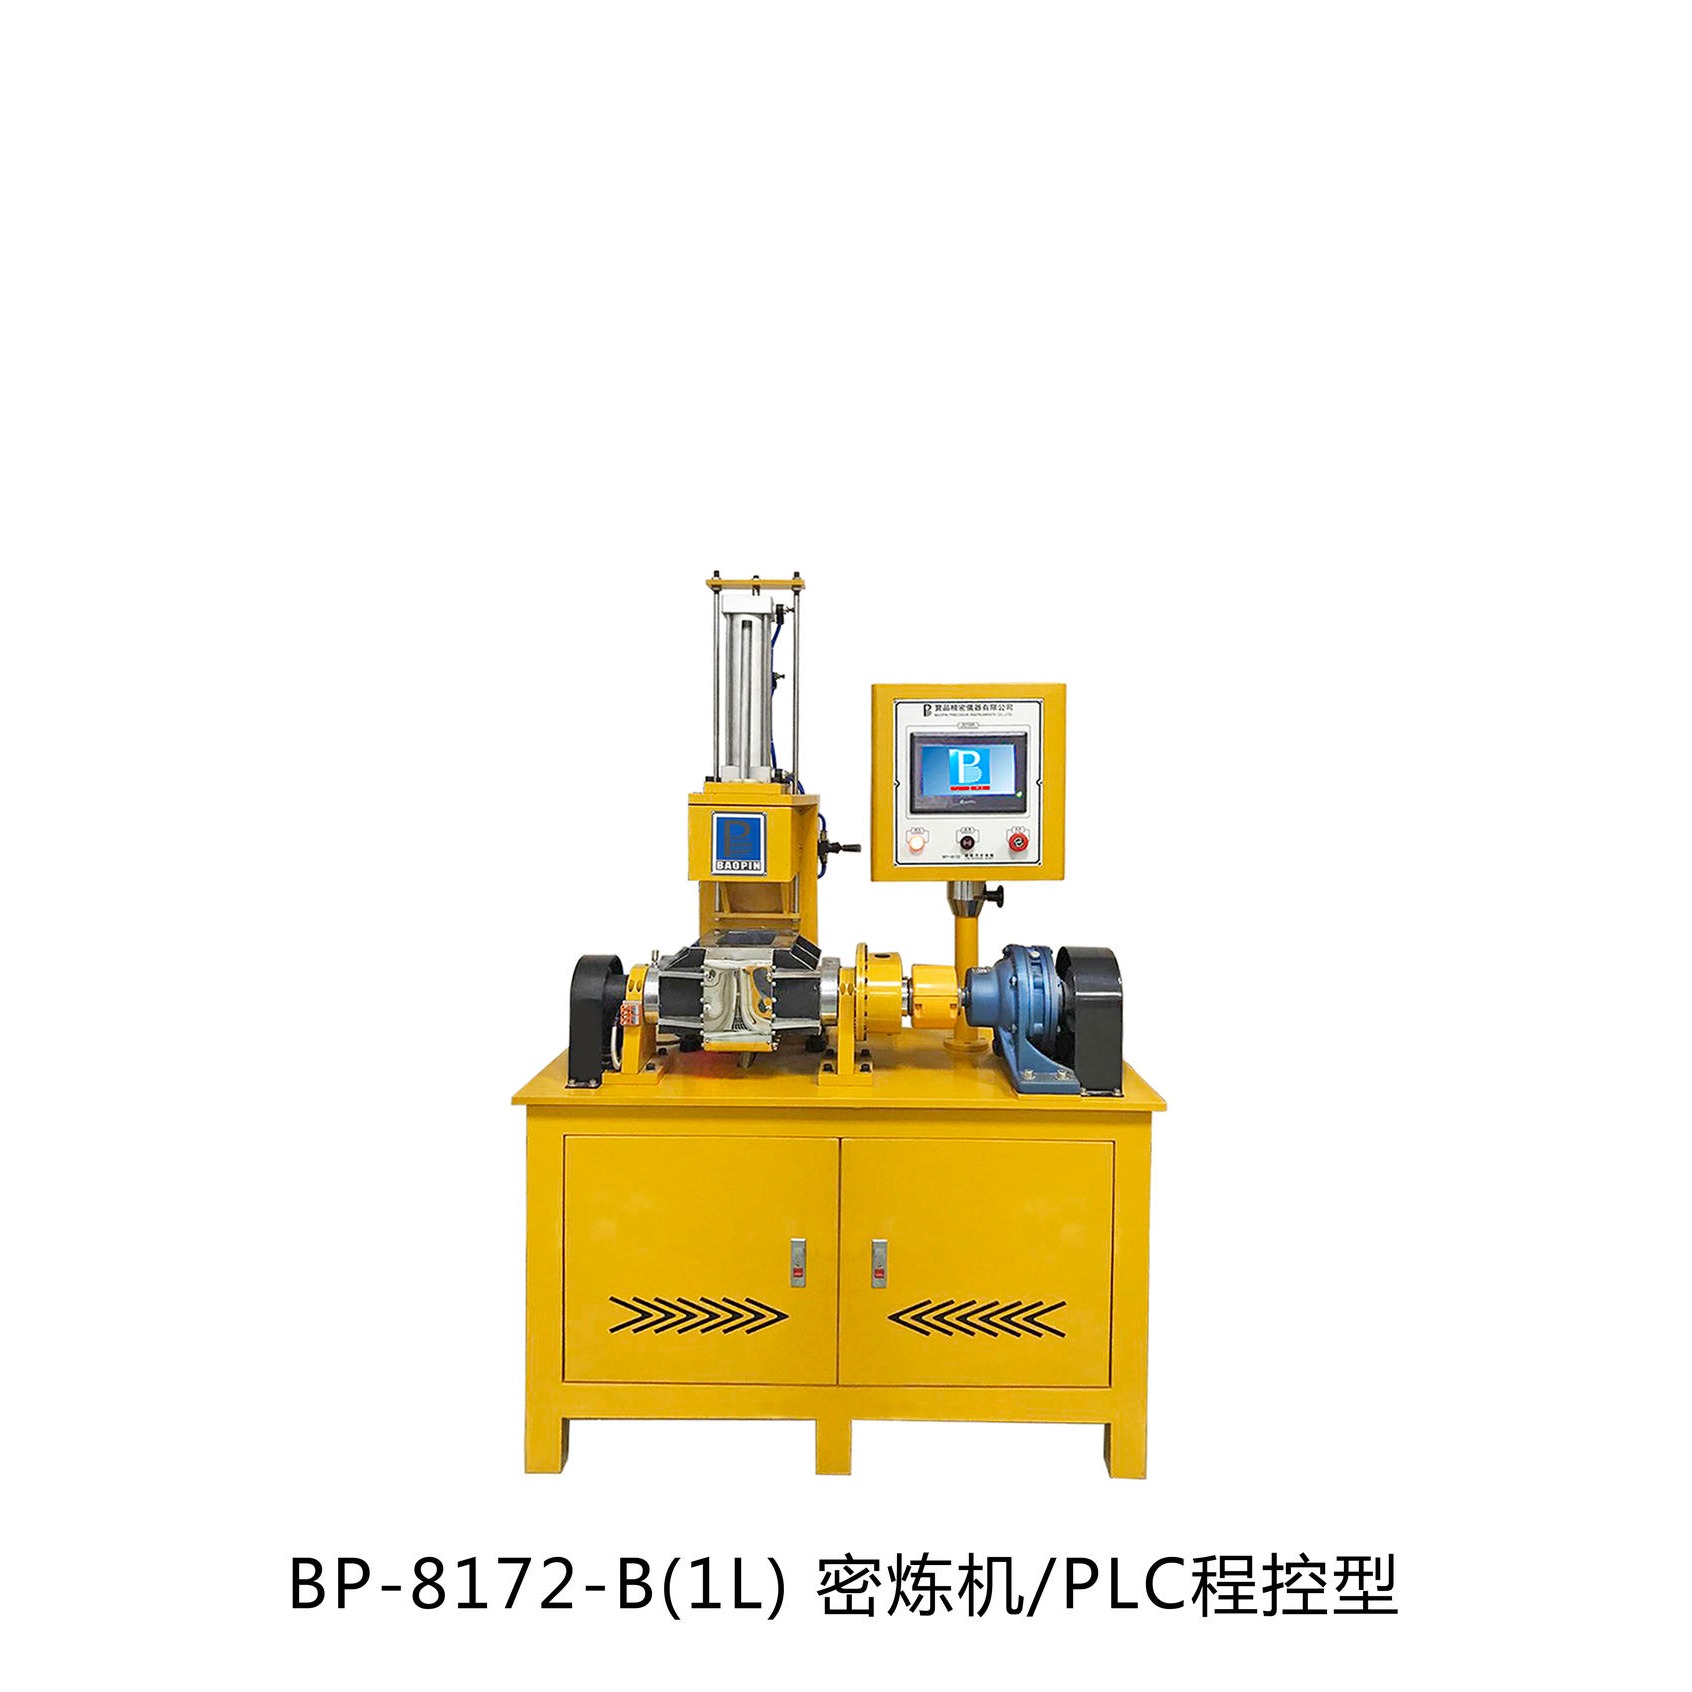 试验型密炼机 小型密炼机厂家 橡胶密炼机 宝品密炼机 BP-8172-B橡胶混炼机图片